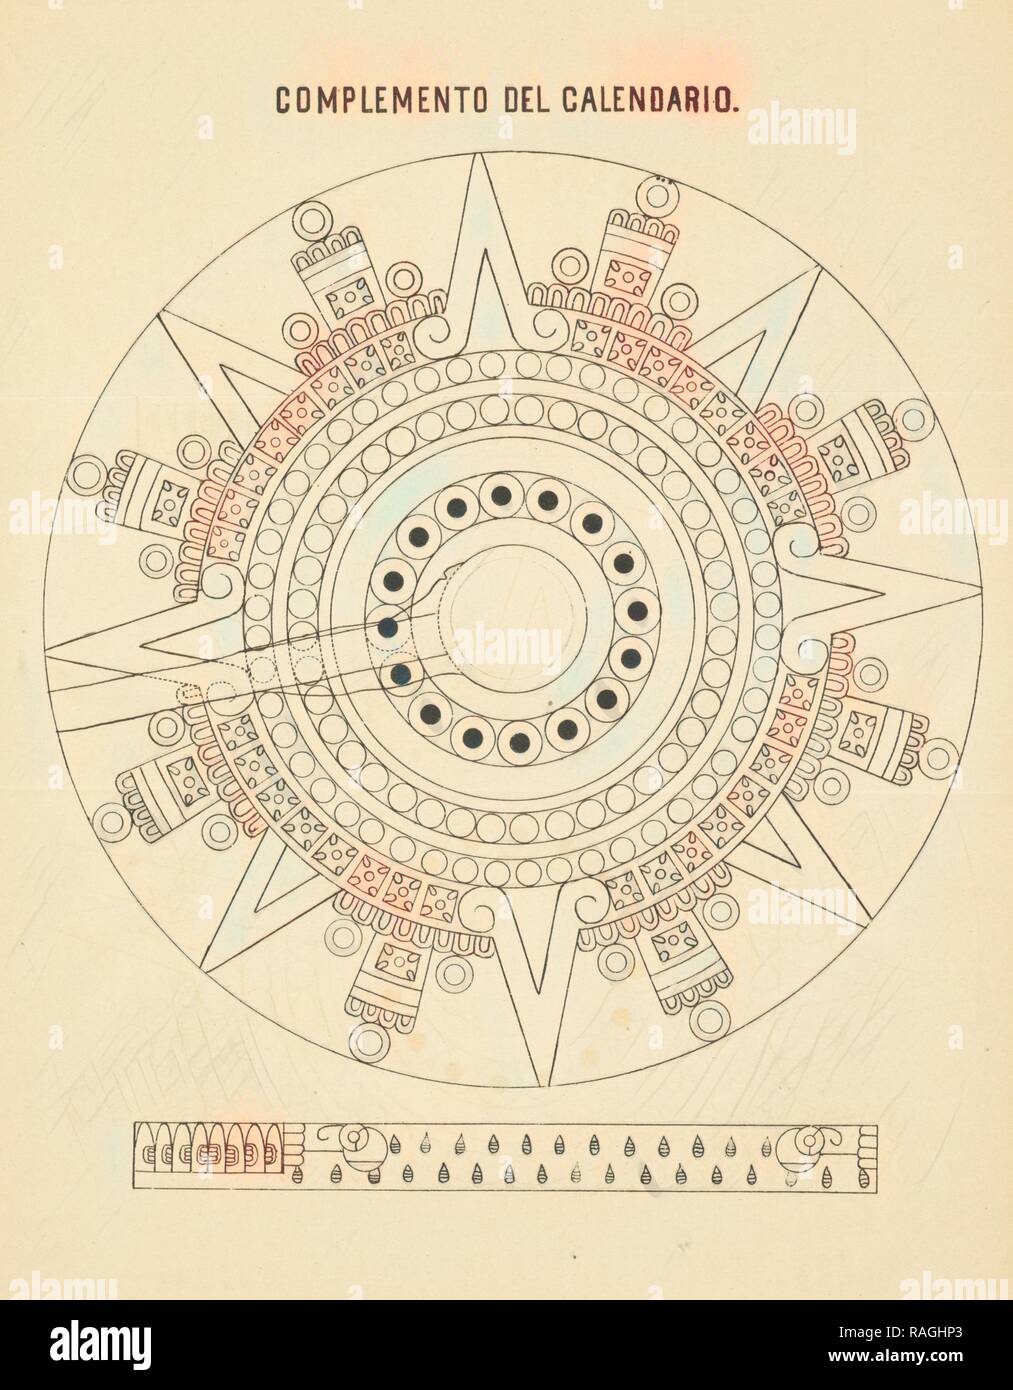 Complemento del calendario, Estudio arqueológico y jeroglífico del Calendario ó gran libro astronómico histórico y reimagined Stock Photo